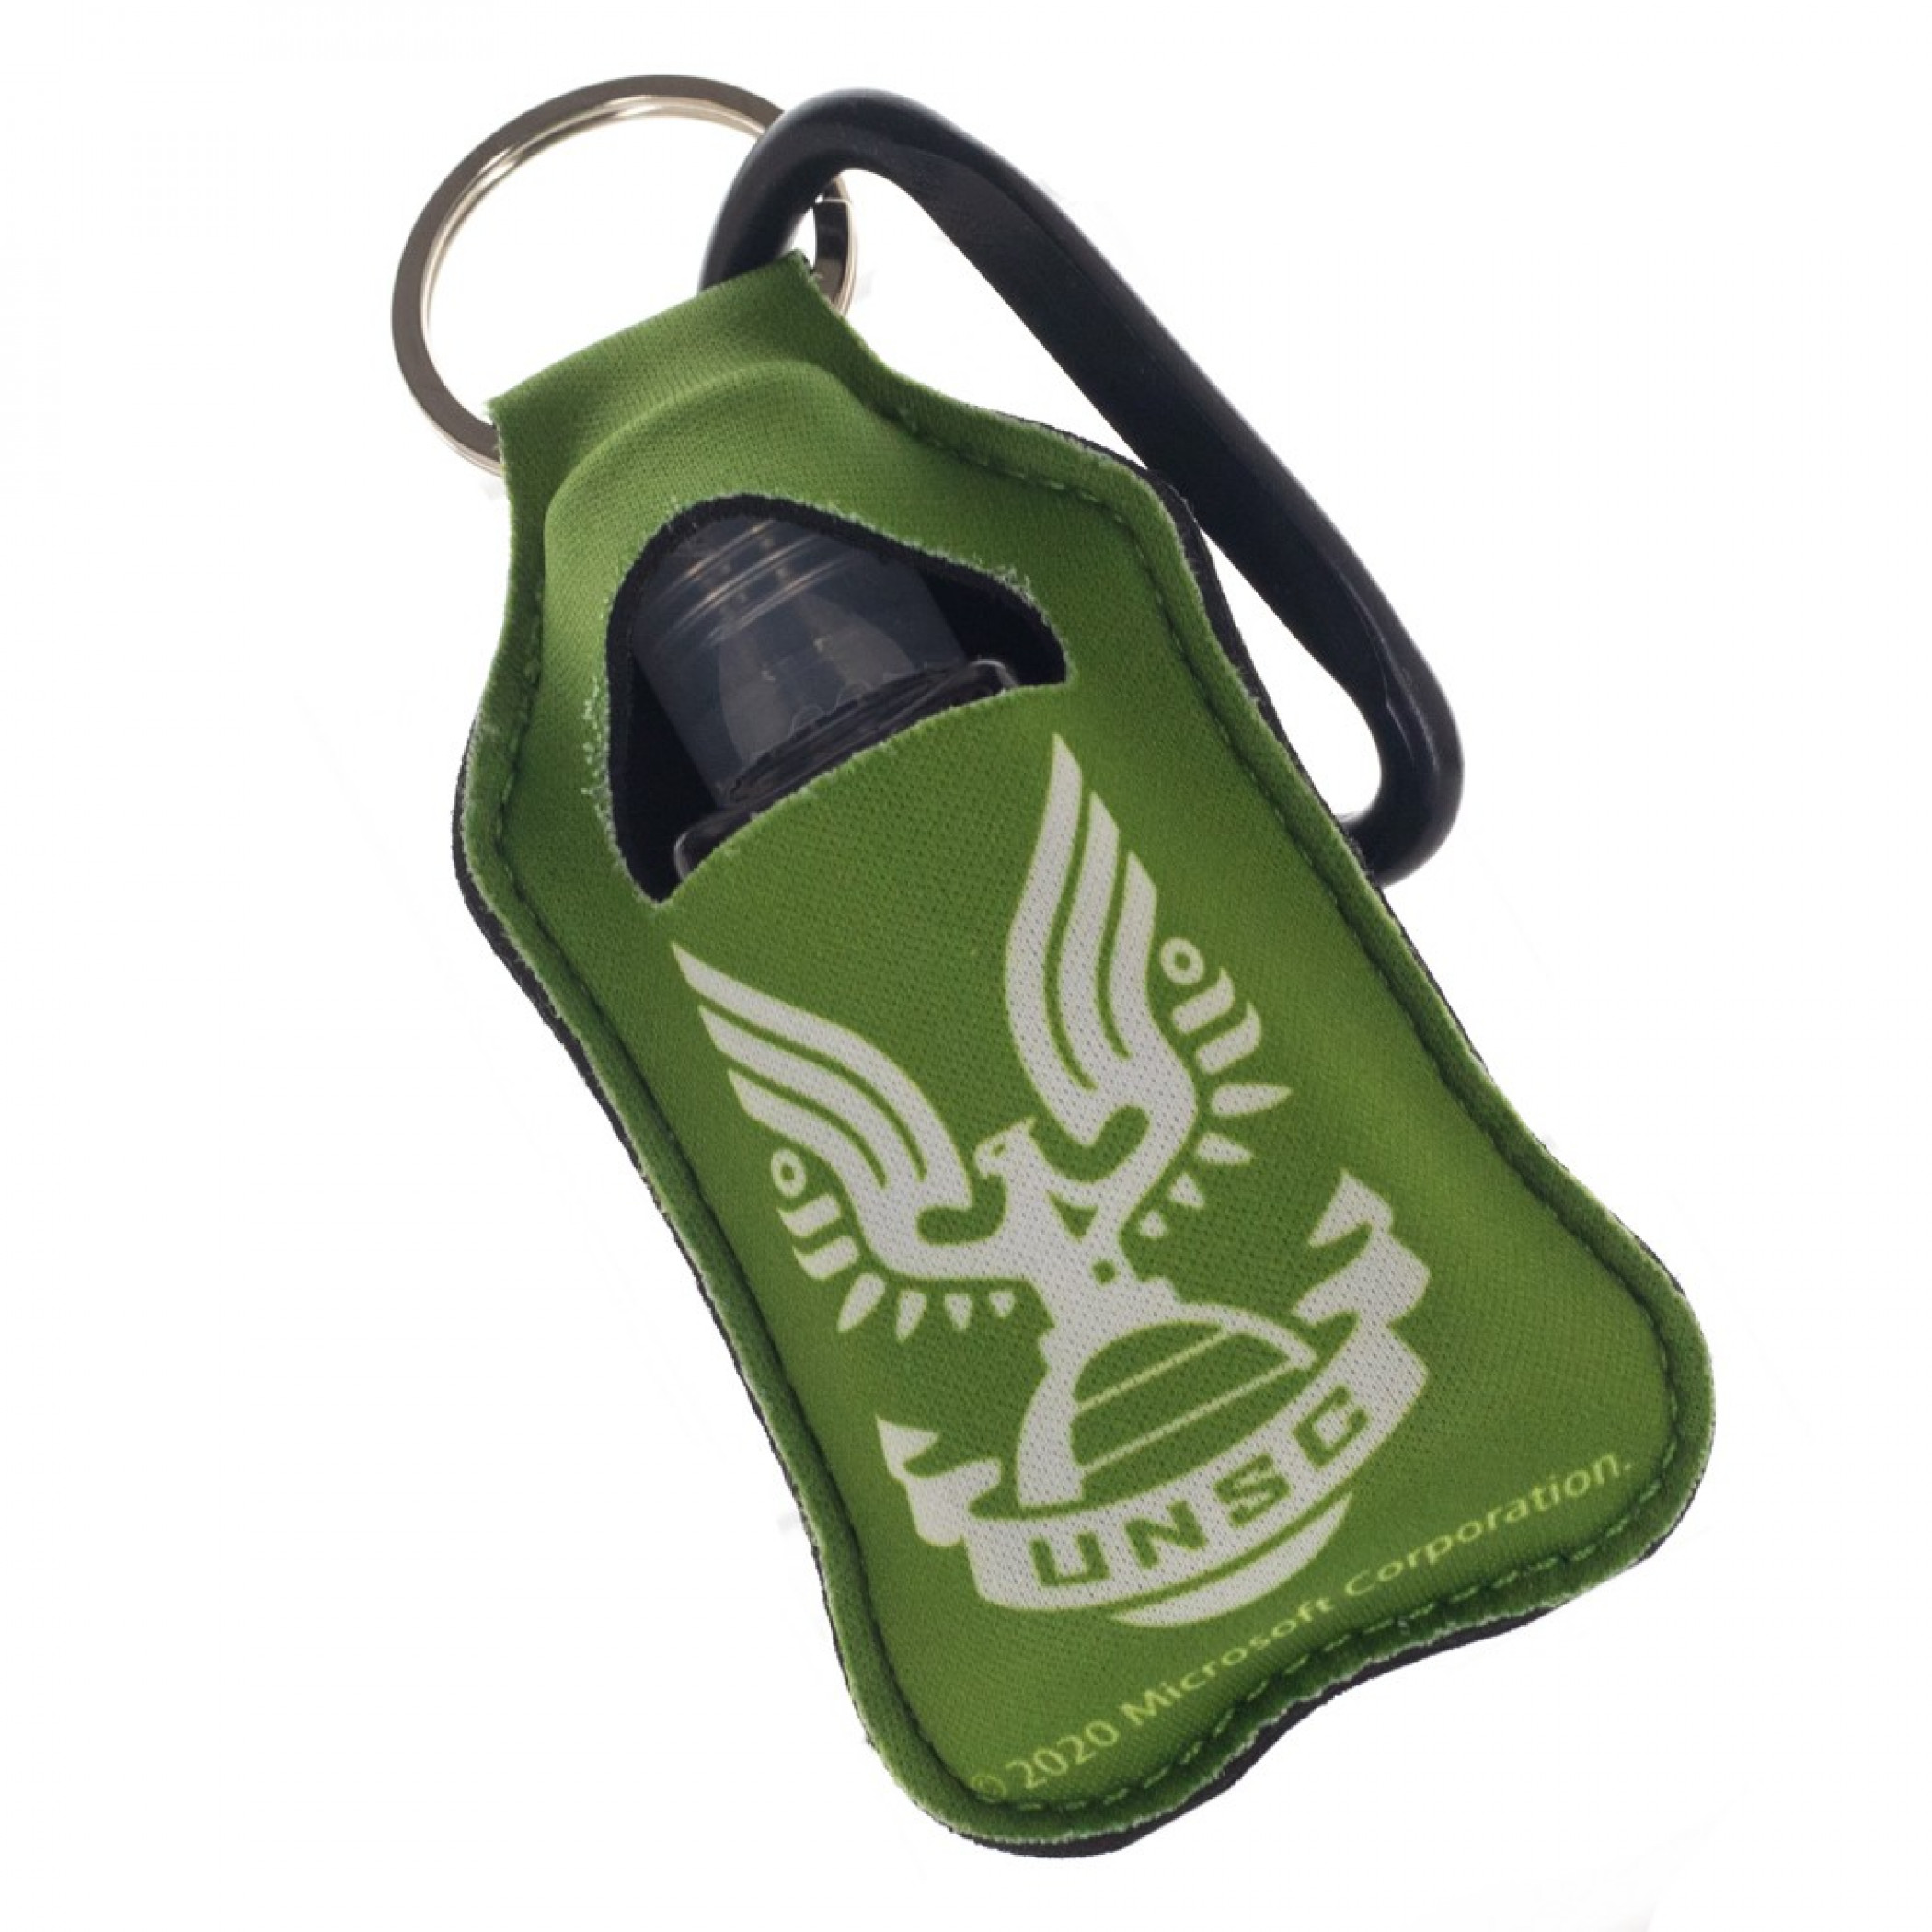 Halo Master Chief Neoprene Bottle Keychain